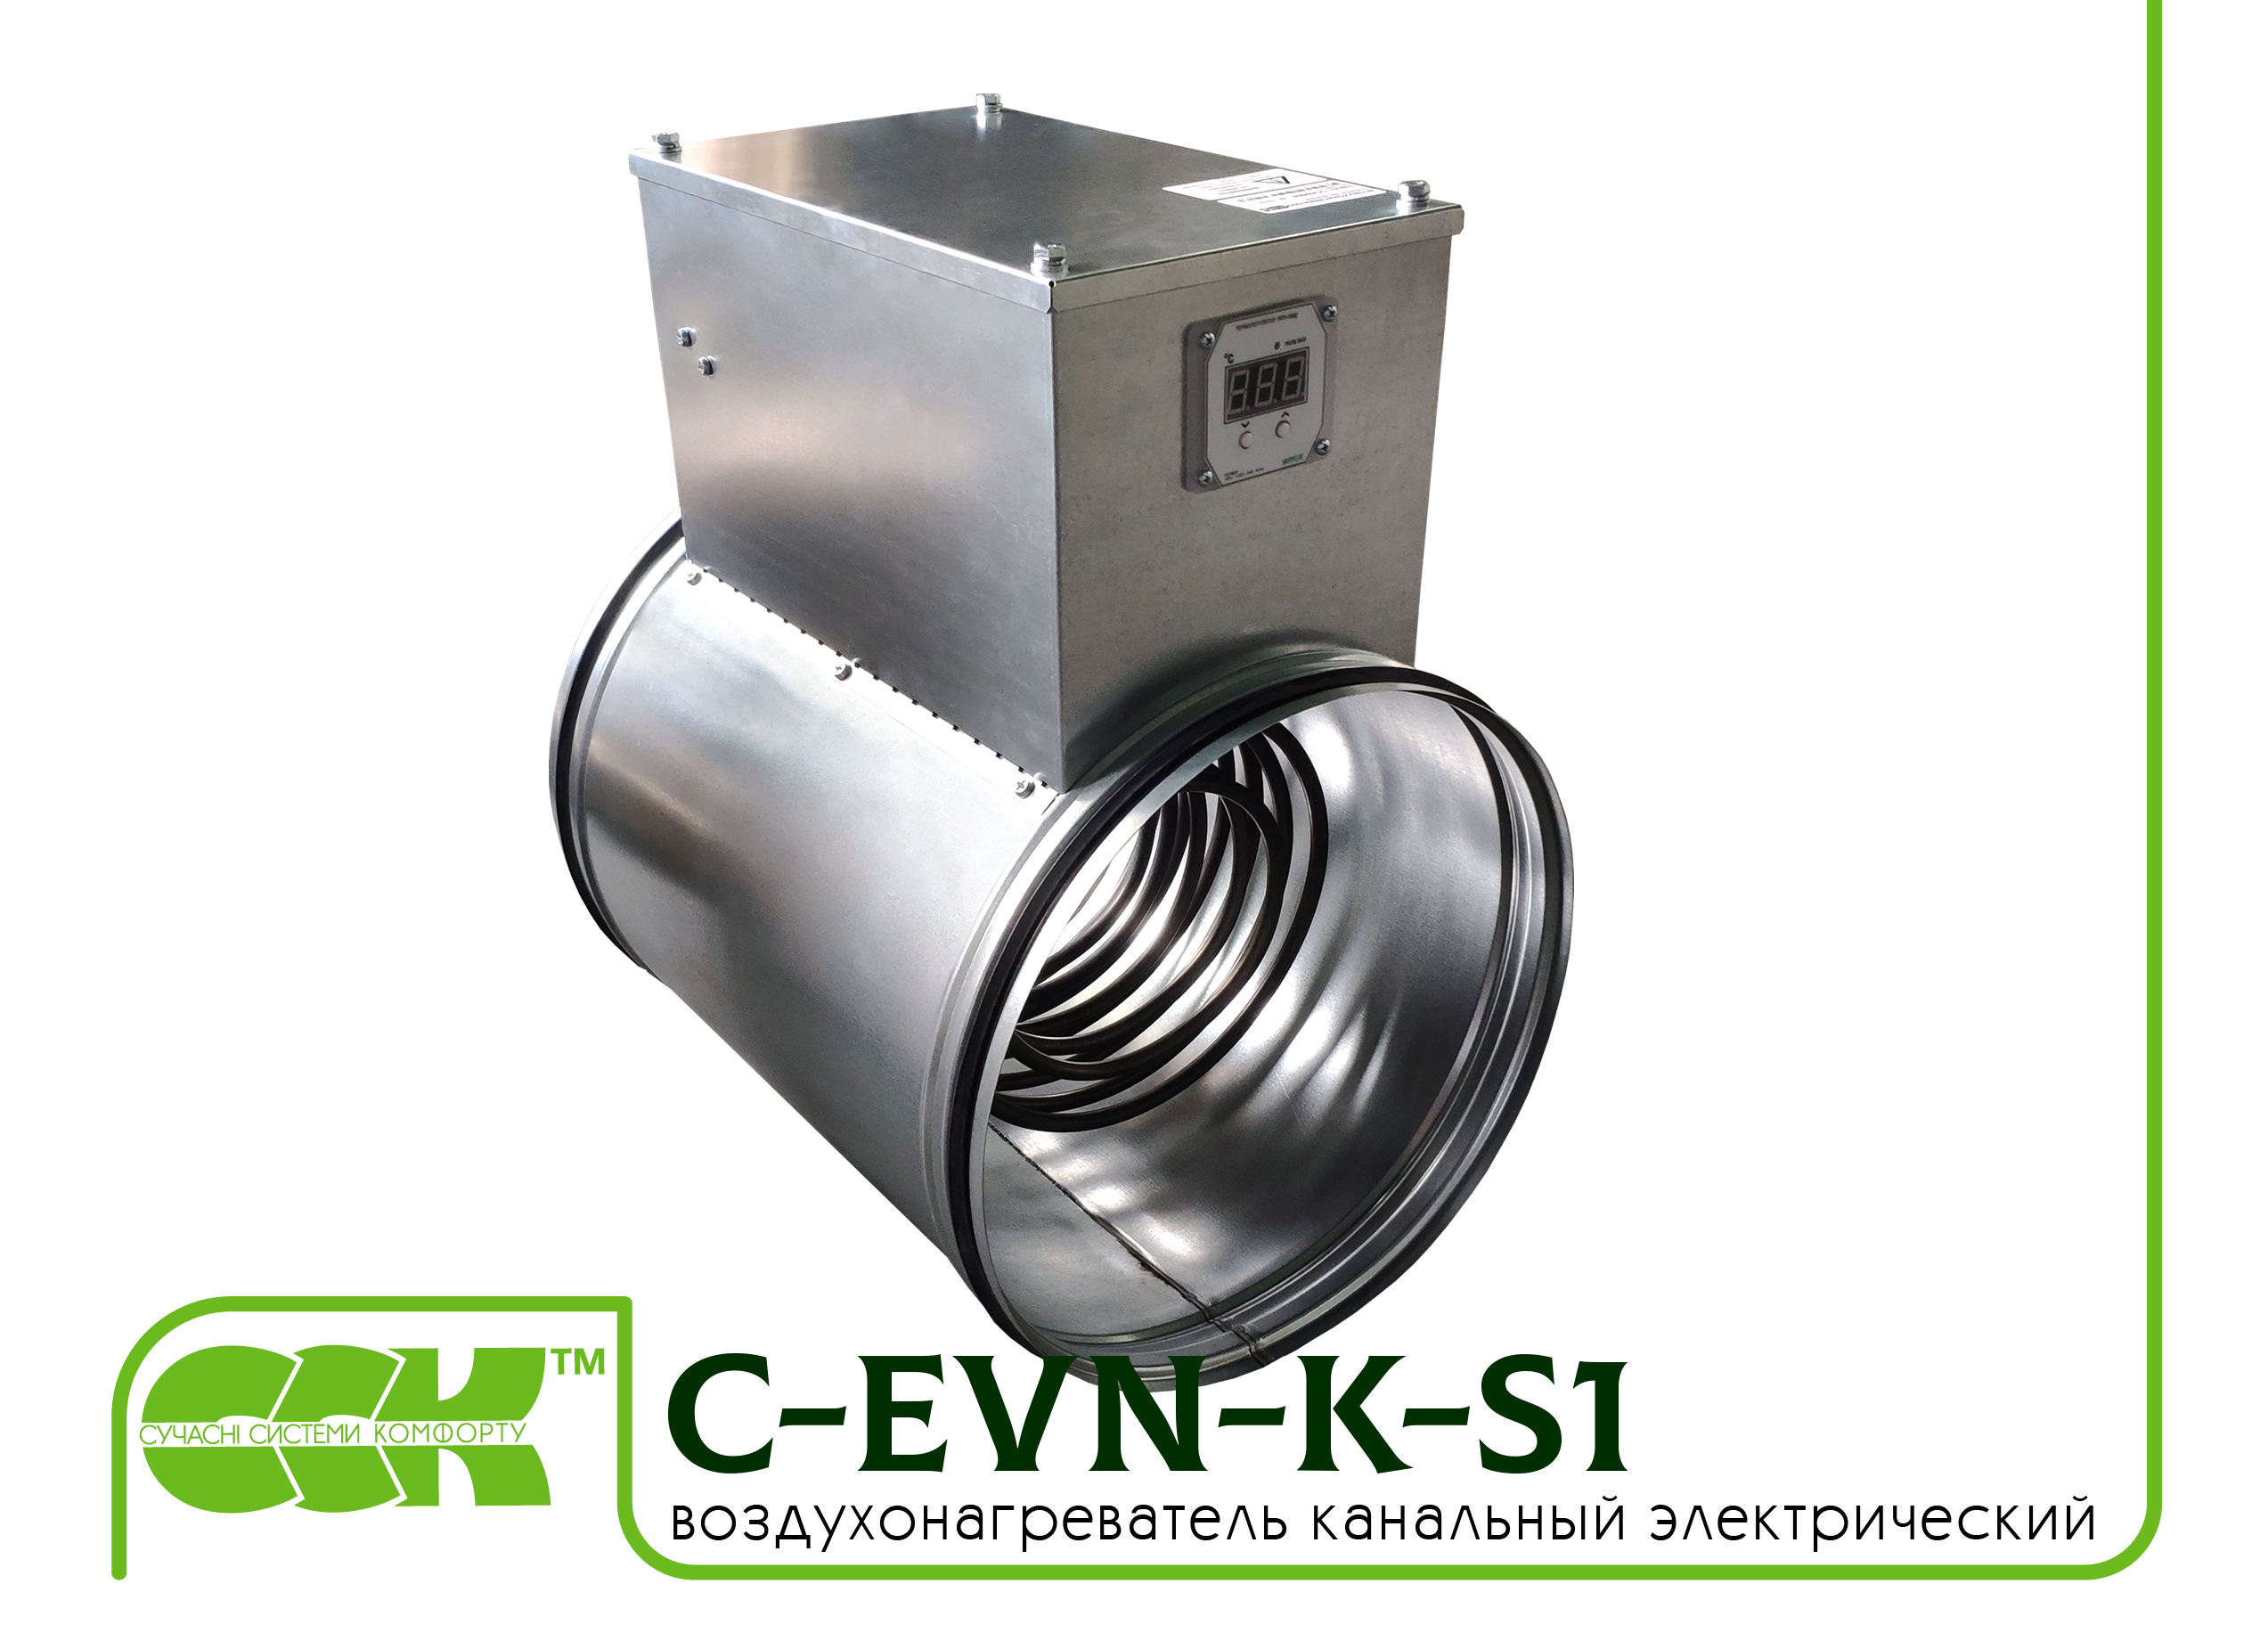 Воздухонагреватель канальный электрический для круглых каналов C-EVN-K-S1-315-3,0